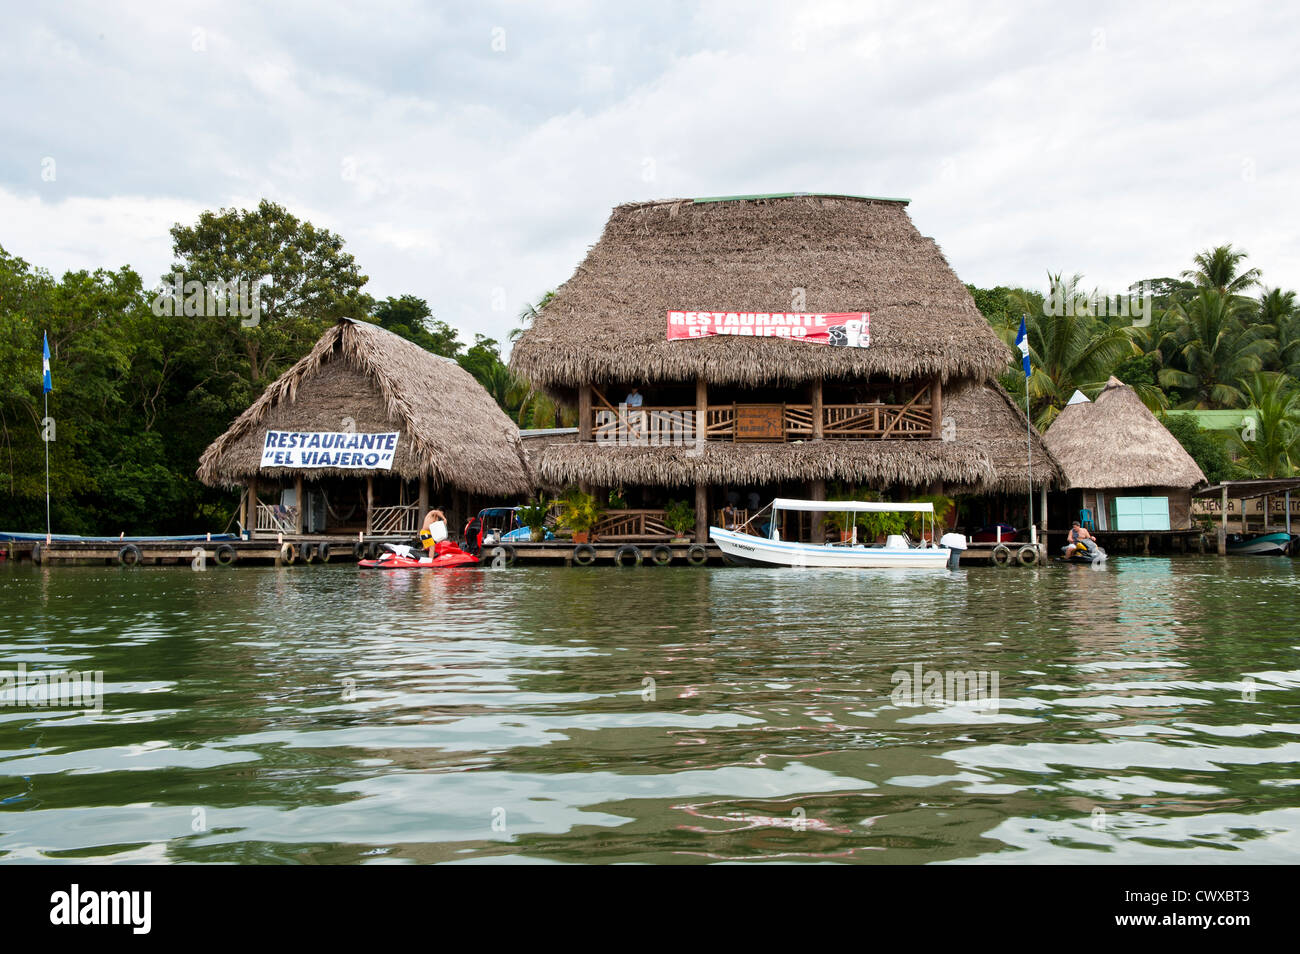 Le Guatemala, le lac d'Izabal, Restaurante El Viajero, Lac Izabal Lago de Izabal, Guatemala. Banque D'Images